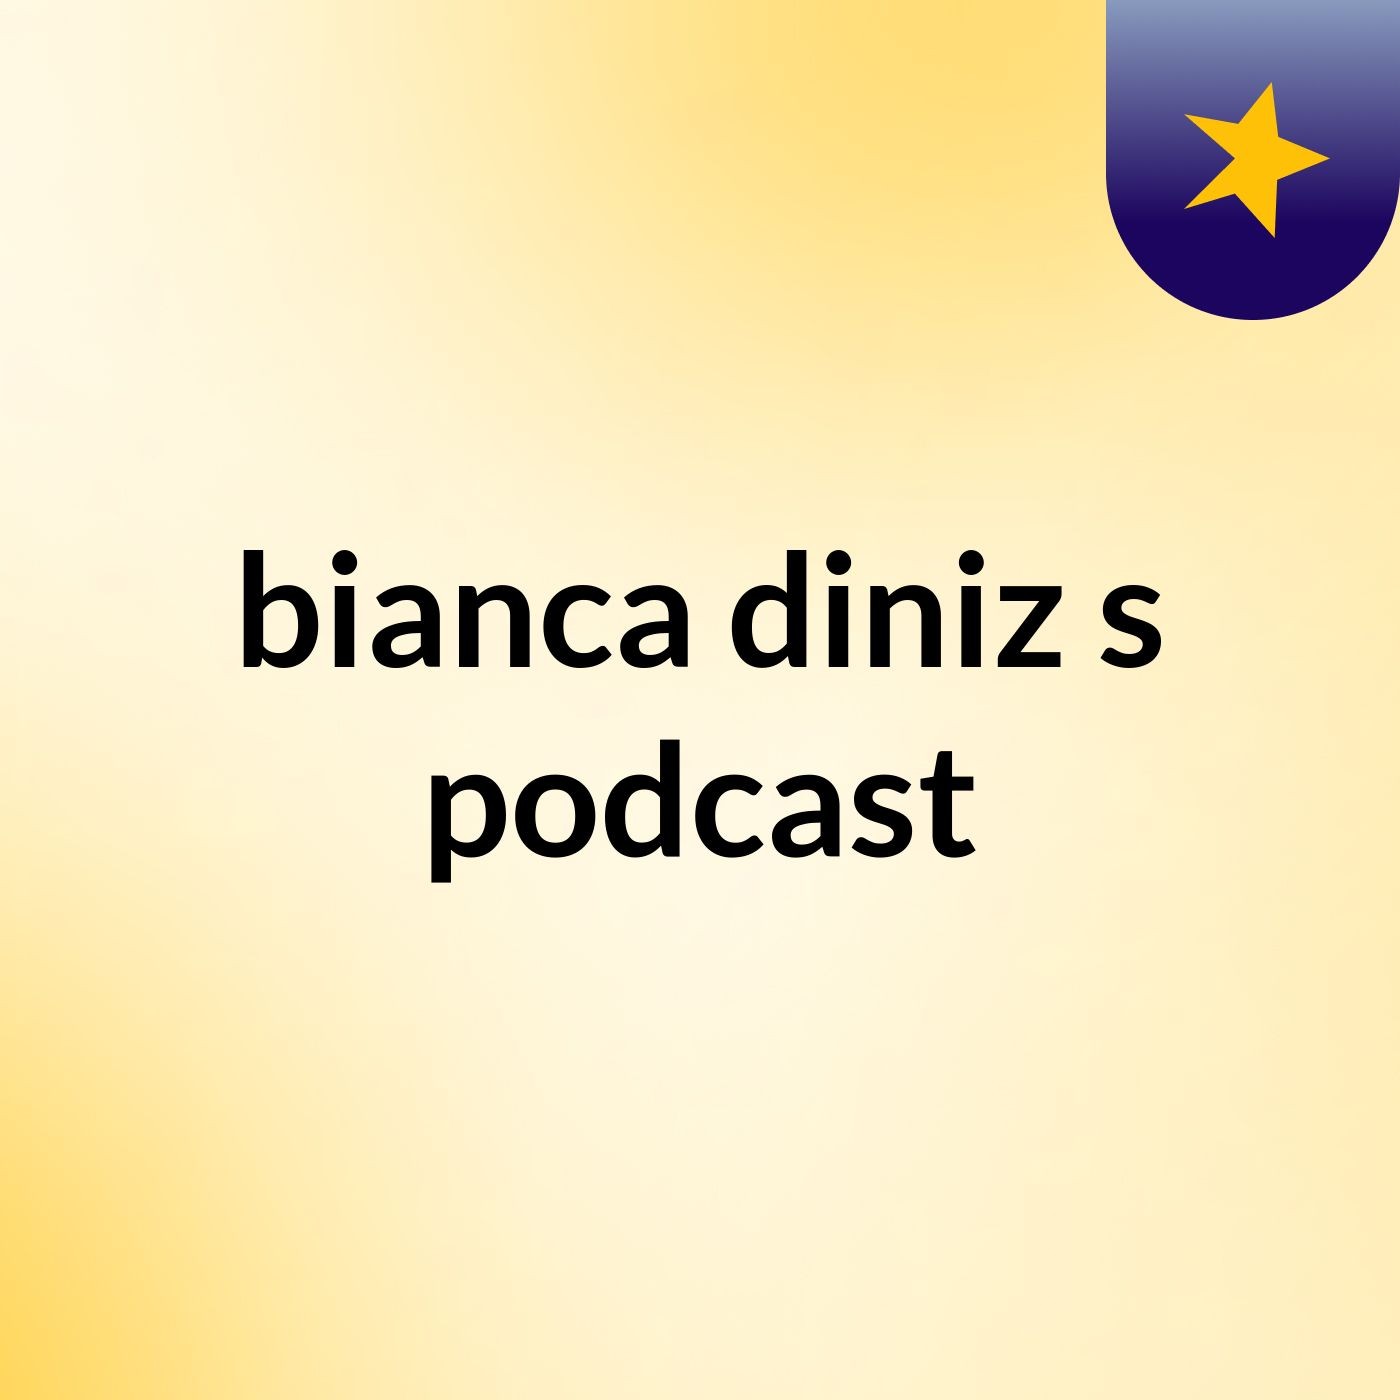 bianca diniz's podcast